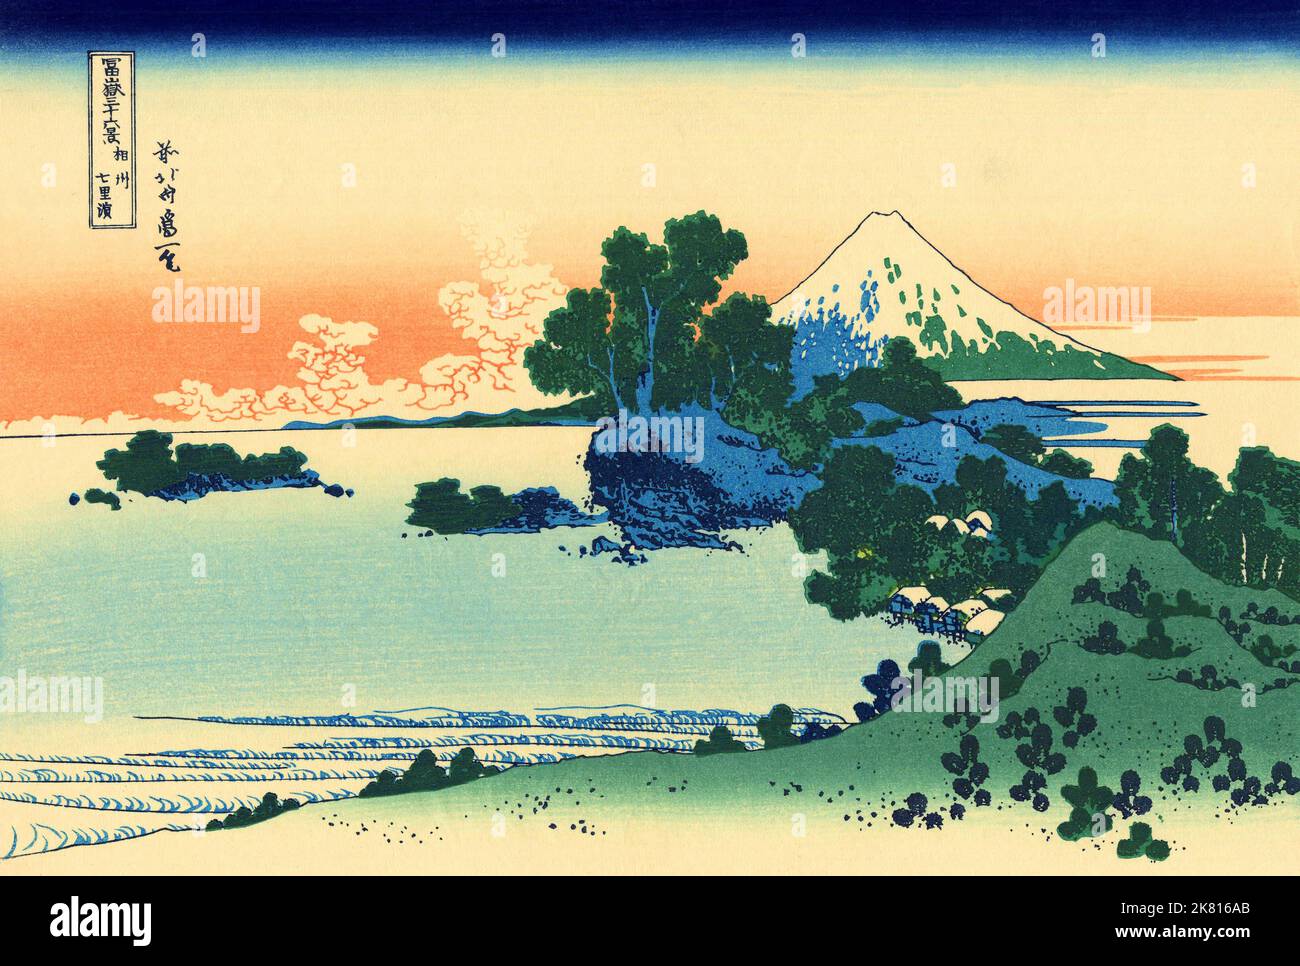 Japon: ‘Plage de Chichiri dans la province de Sagami’.Imprimé Ukiyo-e en blocs de bois de la série «trente-six vues du Mont Fuji» de Katsushika Hokusai (31 octobre 1760 - 10 mai 1849), c.1830. «36 vues du Mont Fuji» est une série «ukiyo-e» de grandes gravures sur bois de l'artiste Katsushika Hokusai.La série représente le Mont Fuji dans différentes saisons et conditions météorologiques à partir de divers endroits et distances.Il se compose en fait de 46 tirages créés entre 1826 et 1833.Les 36 premiers ont été inclus dans la publication originale et, en raison de leur popularité, 10 autres ont été ajoutés par la suite. Banque D'Images